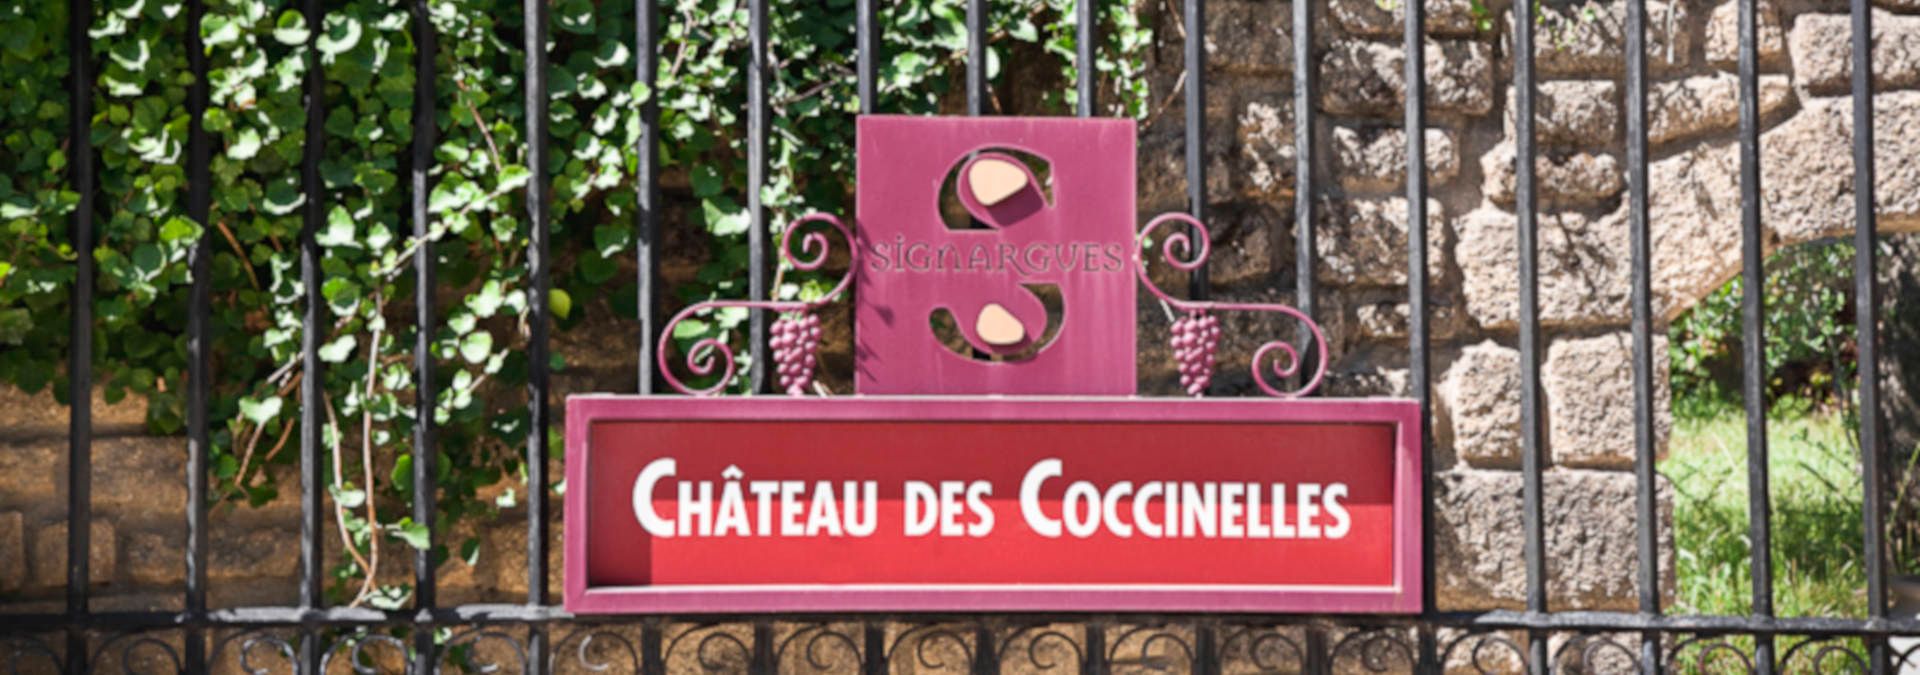 Château des Coccinelles - Rue des Vignerons